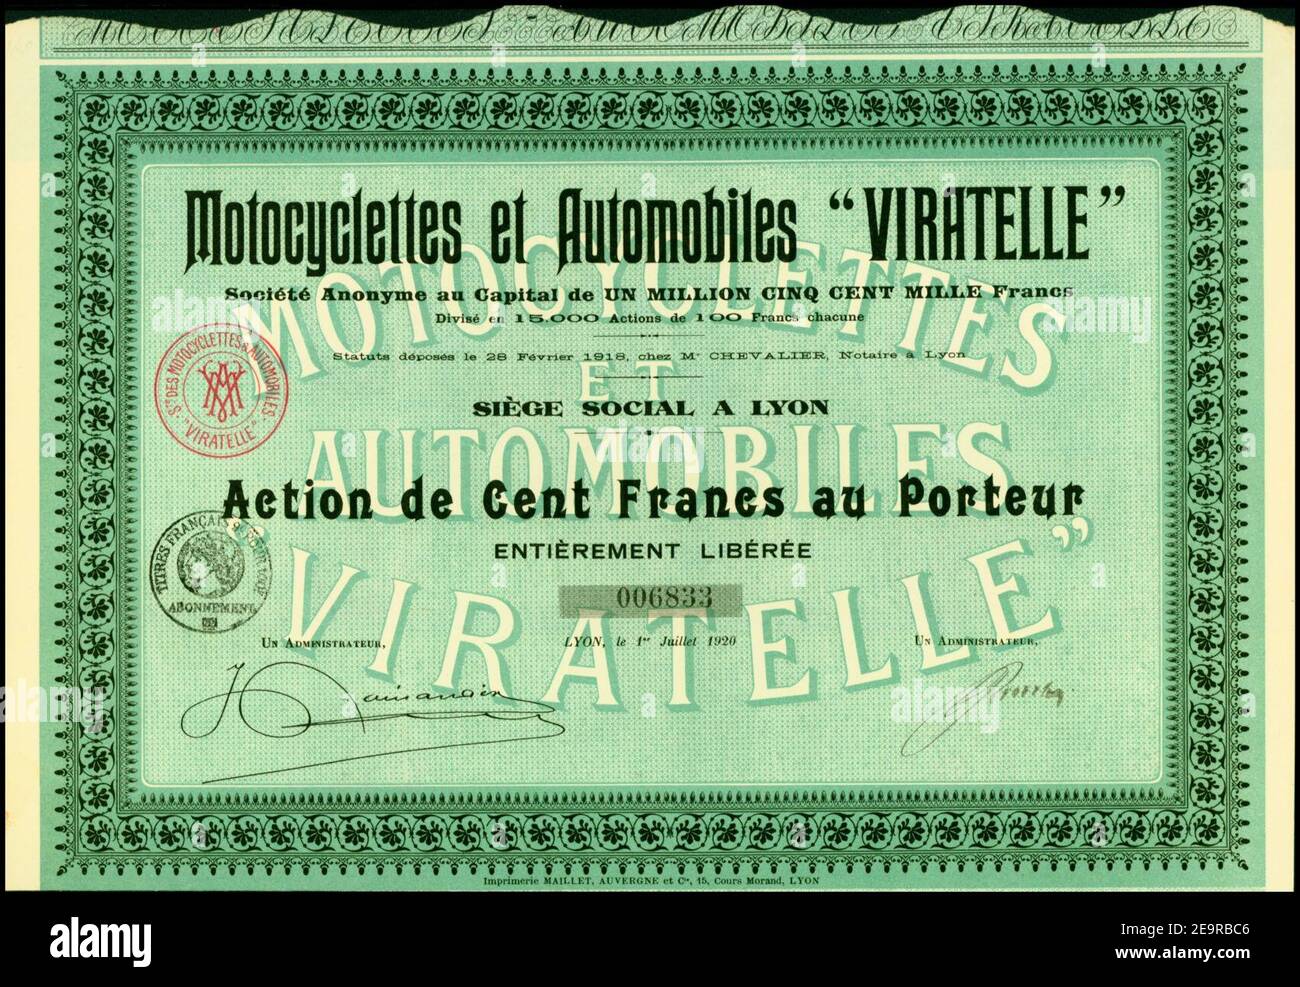 Motociclettes et Automobiles Viratelle 1920. Foto Stock